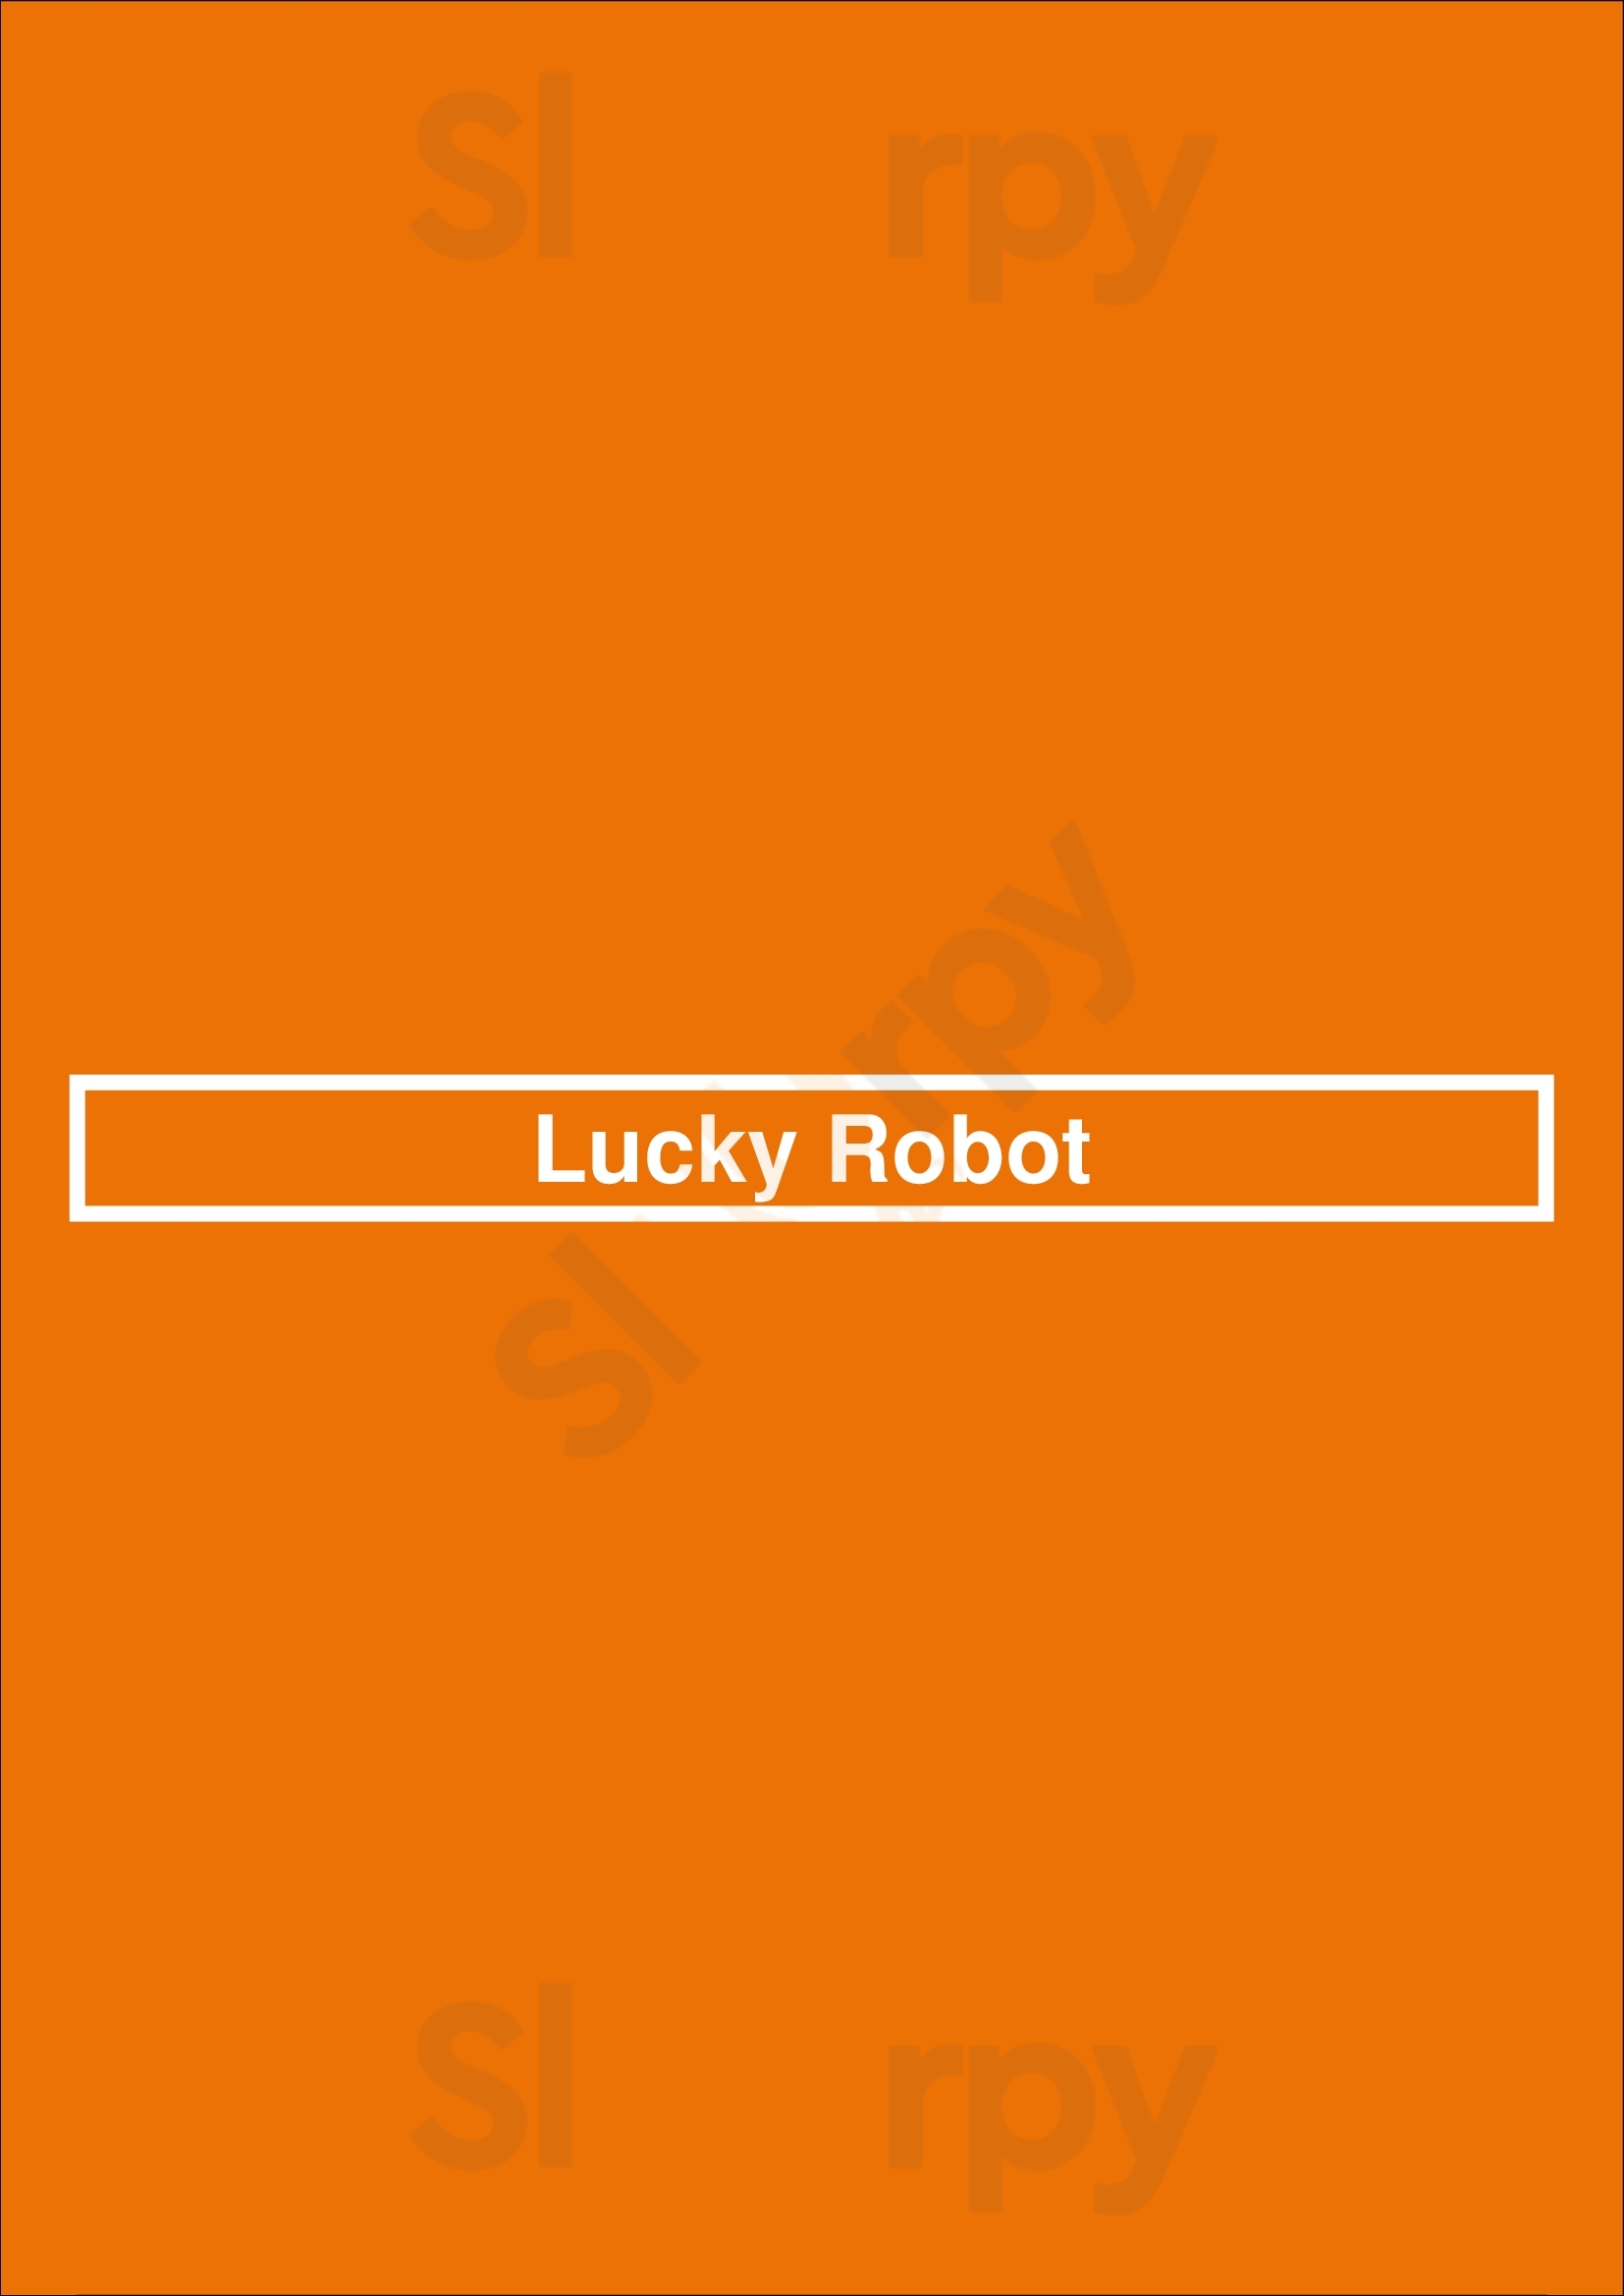 Lucky Robot Austin Menu - 1